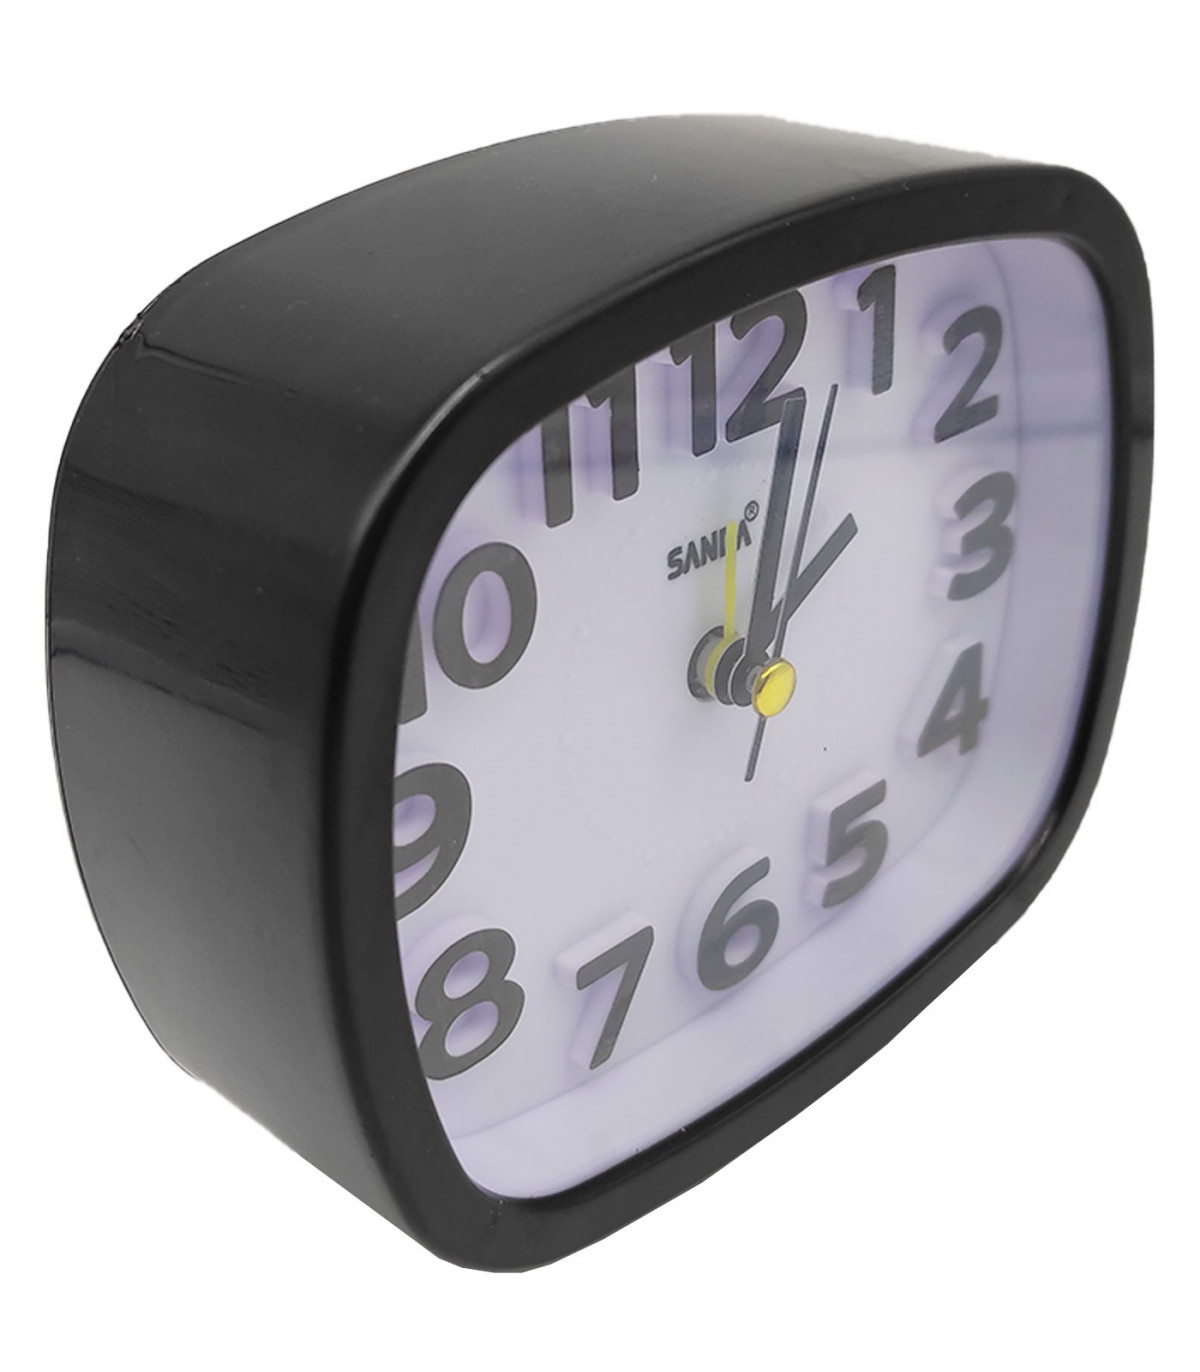  YDSLZQ - Reloj despertador analógico súper silencioso